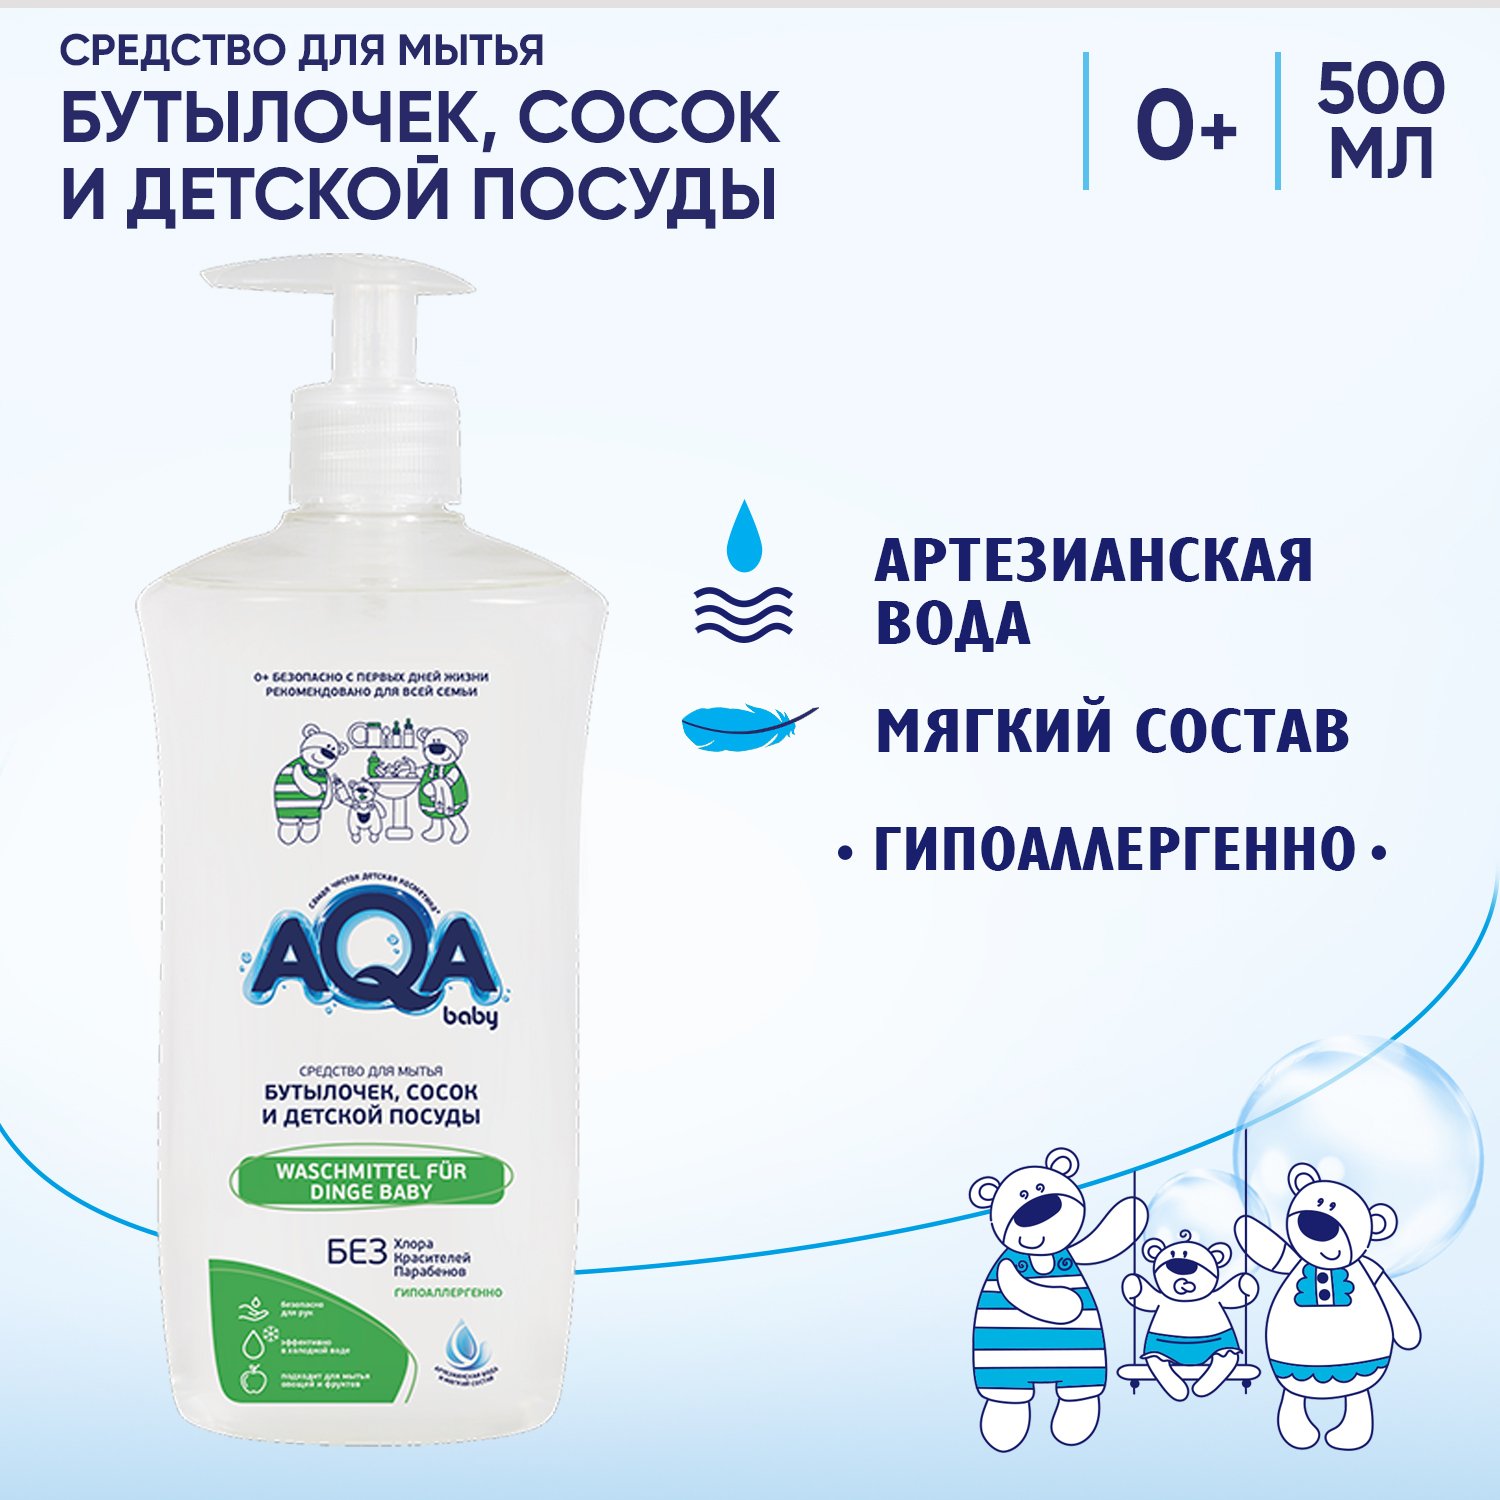 Средство AQA baby для мытья бутылочек, сосок и детской посуды 500 мл - фото 4